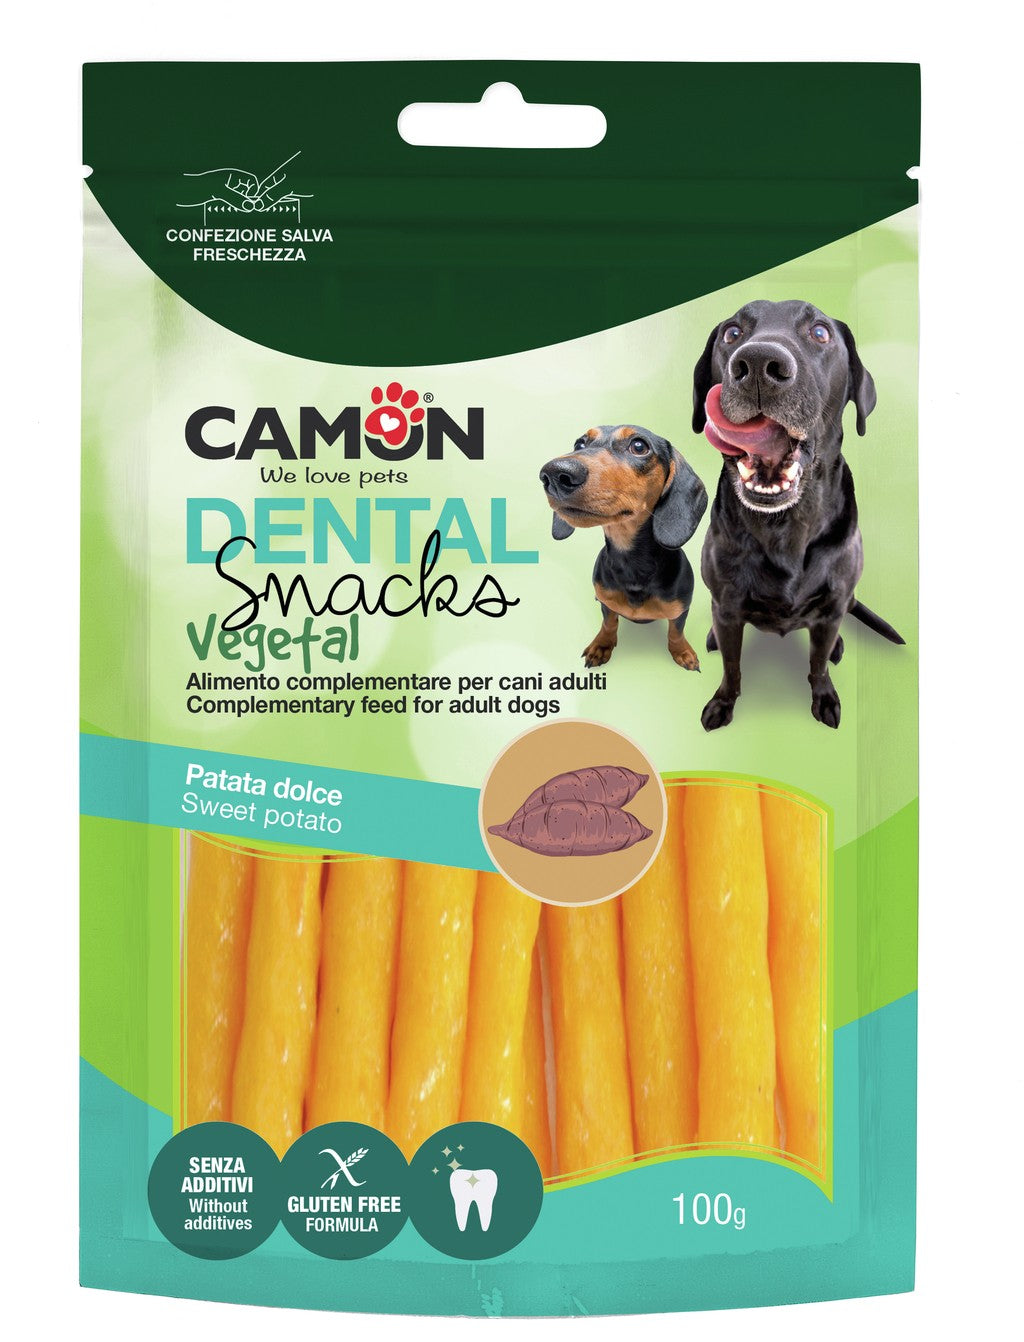 Camon Bauveg Sticks con Patata Dolce 100g Snack Vegetale per Cani